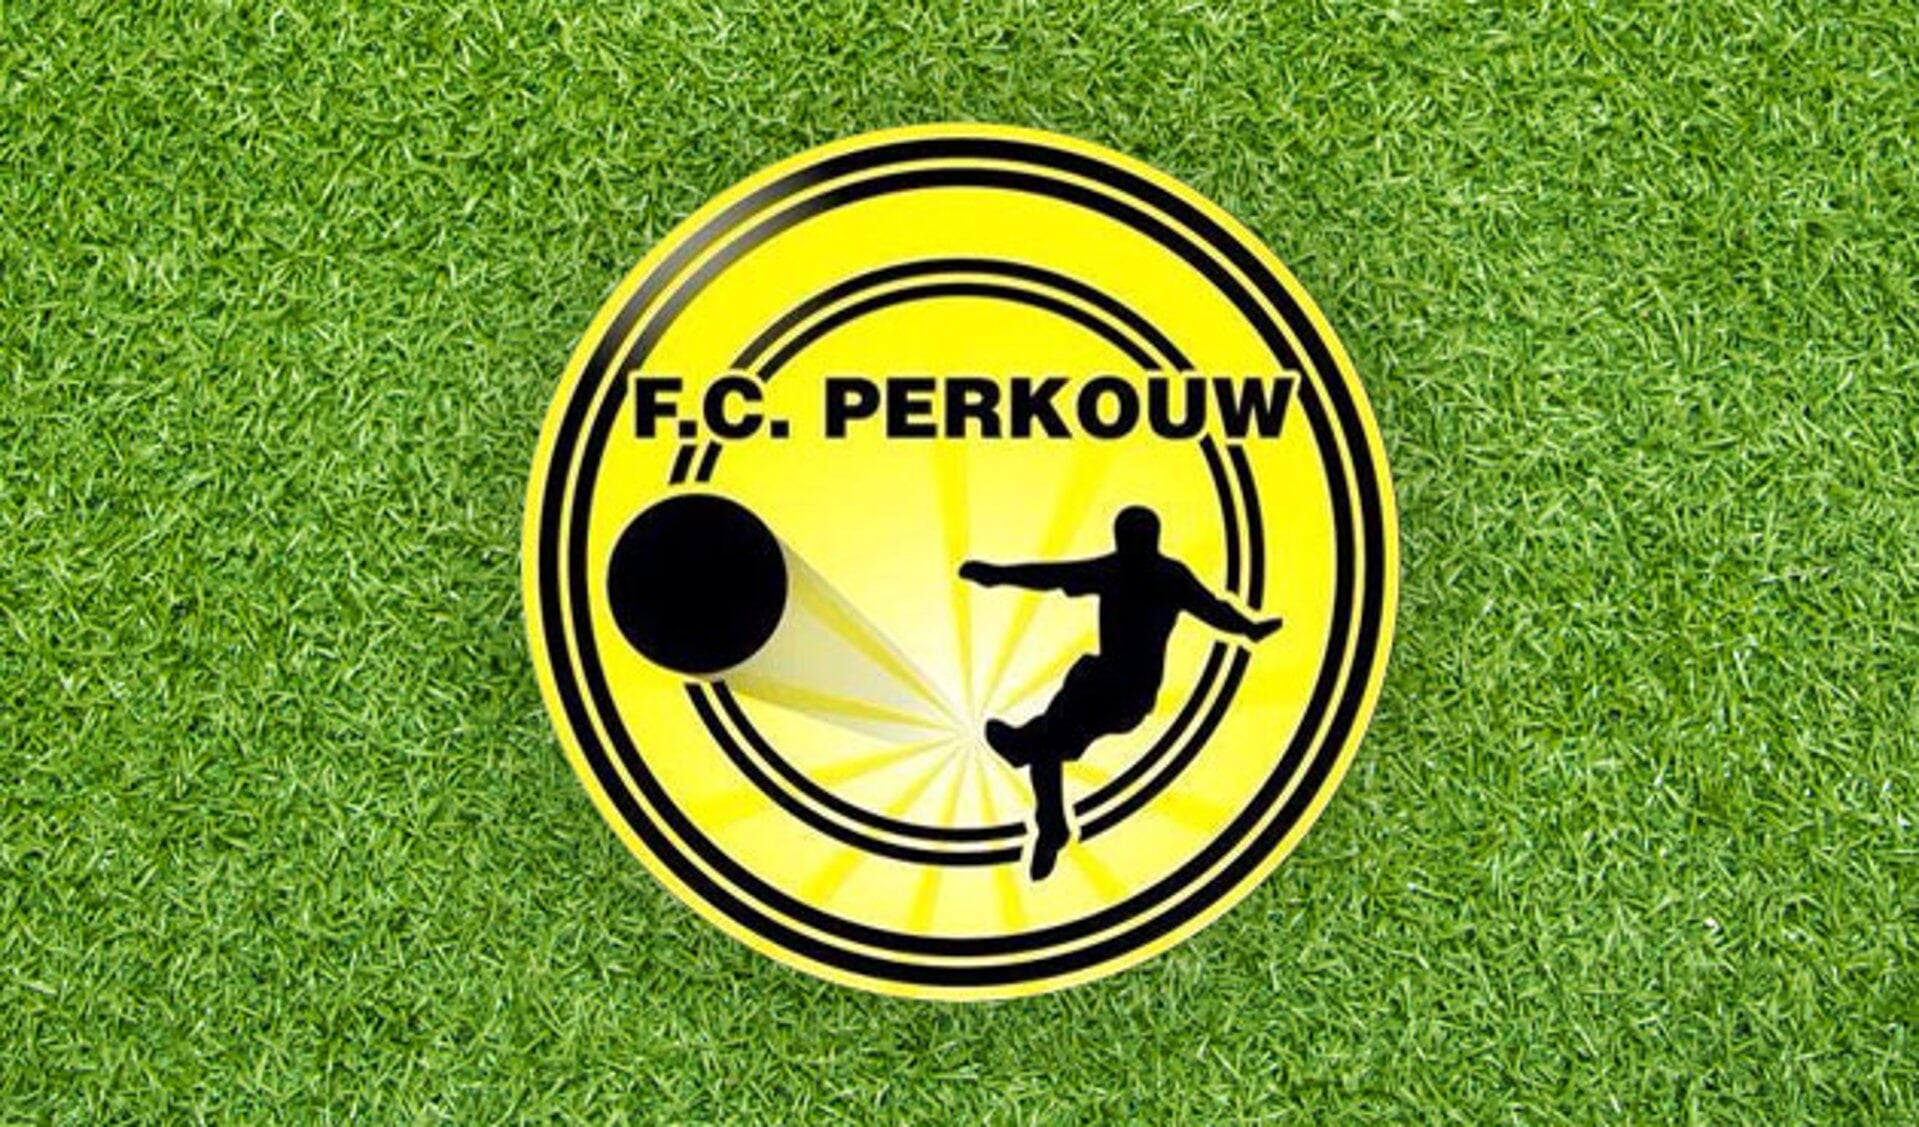 Christian Schrader (Spirit) keert terug naar FC Perkouw